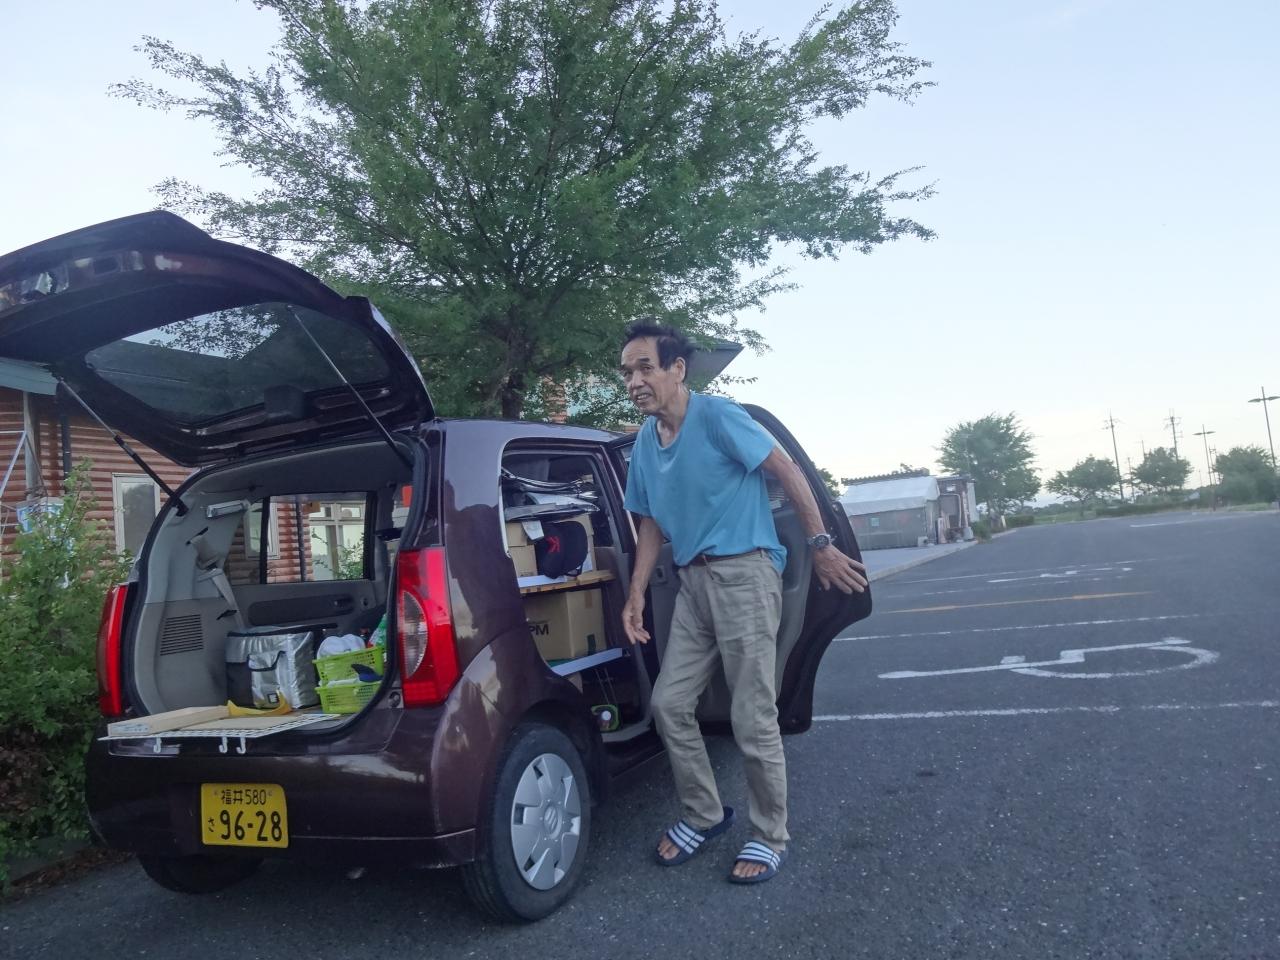 ダブル台風と一緒に 長浜 福井 能登で車中泊 3 17 嵐の夜を琵琶湖の岸で過ごし あこがれの日本海へ 長浜 滋賀県 の旅行記 ブログ By Motogenさん フォートラベル